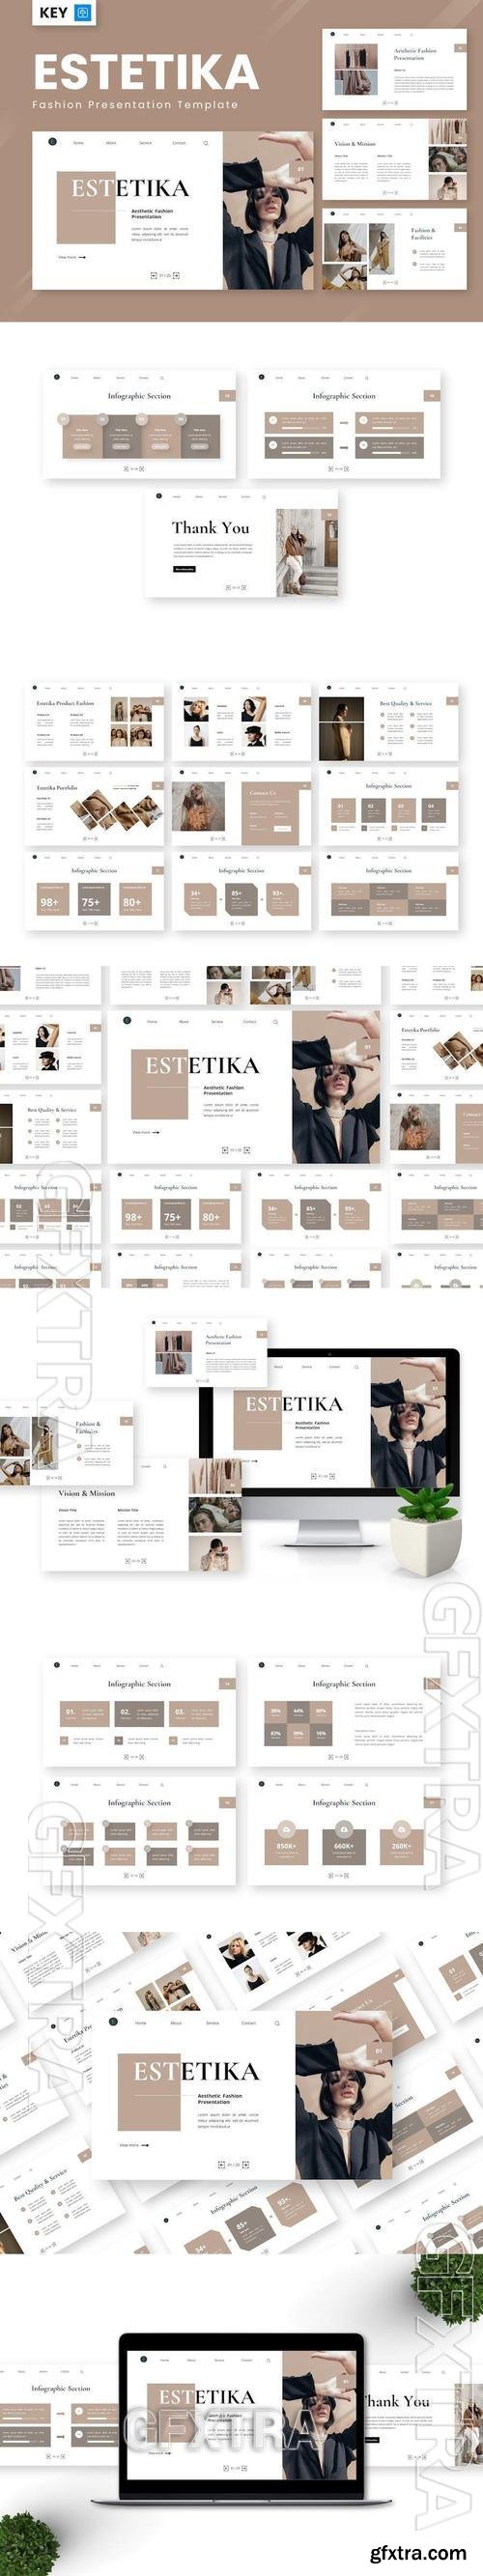 Estetika - Fashion Keynote Templates 3FSYLW7